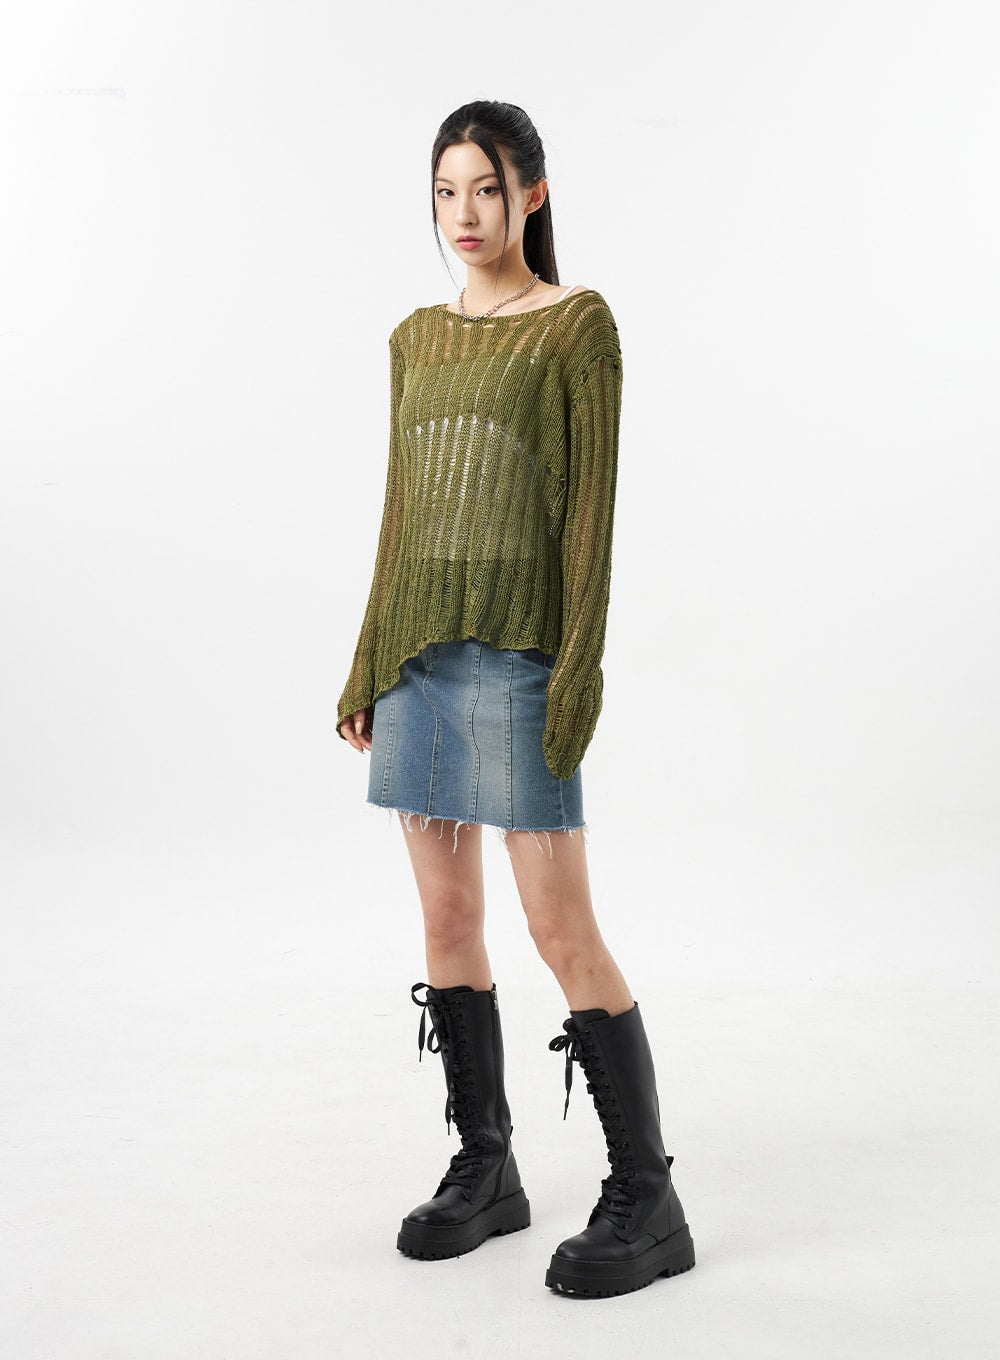 mesh-sweater-cu309